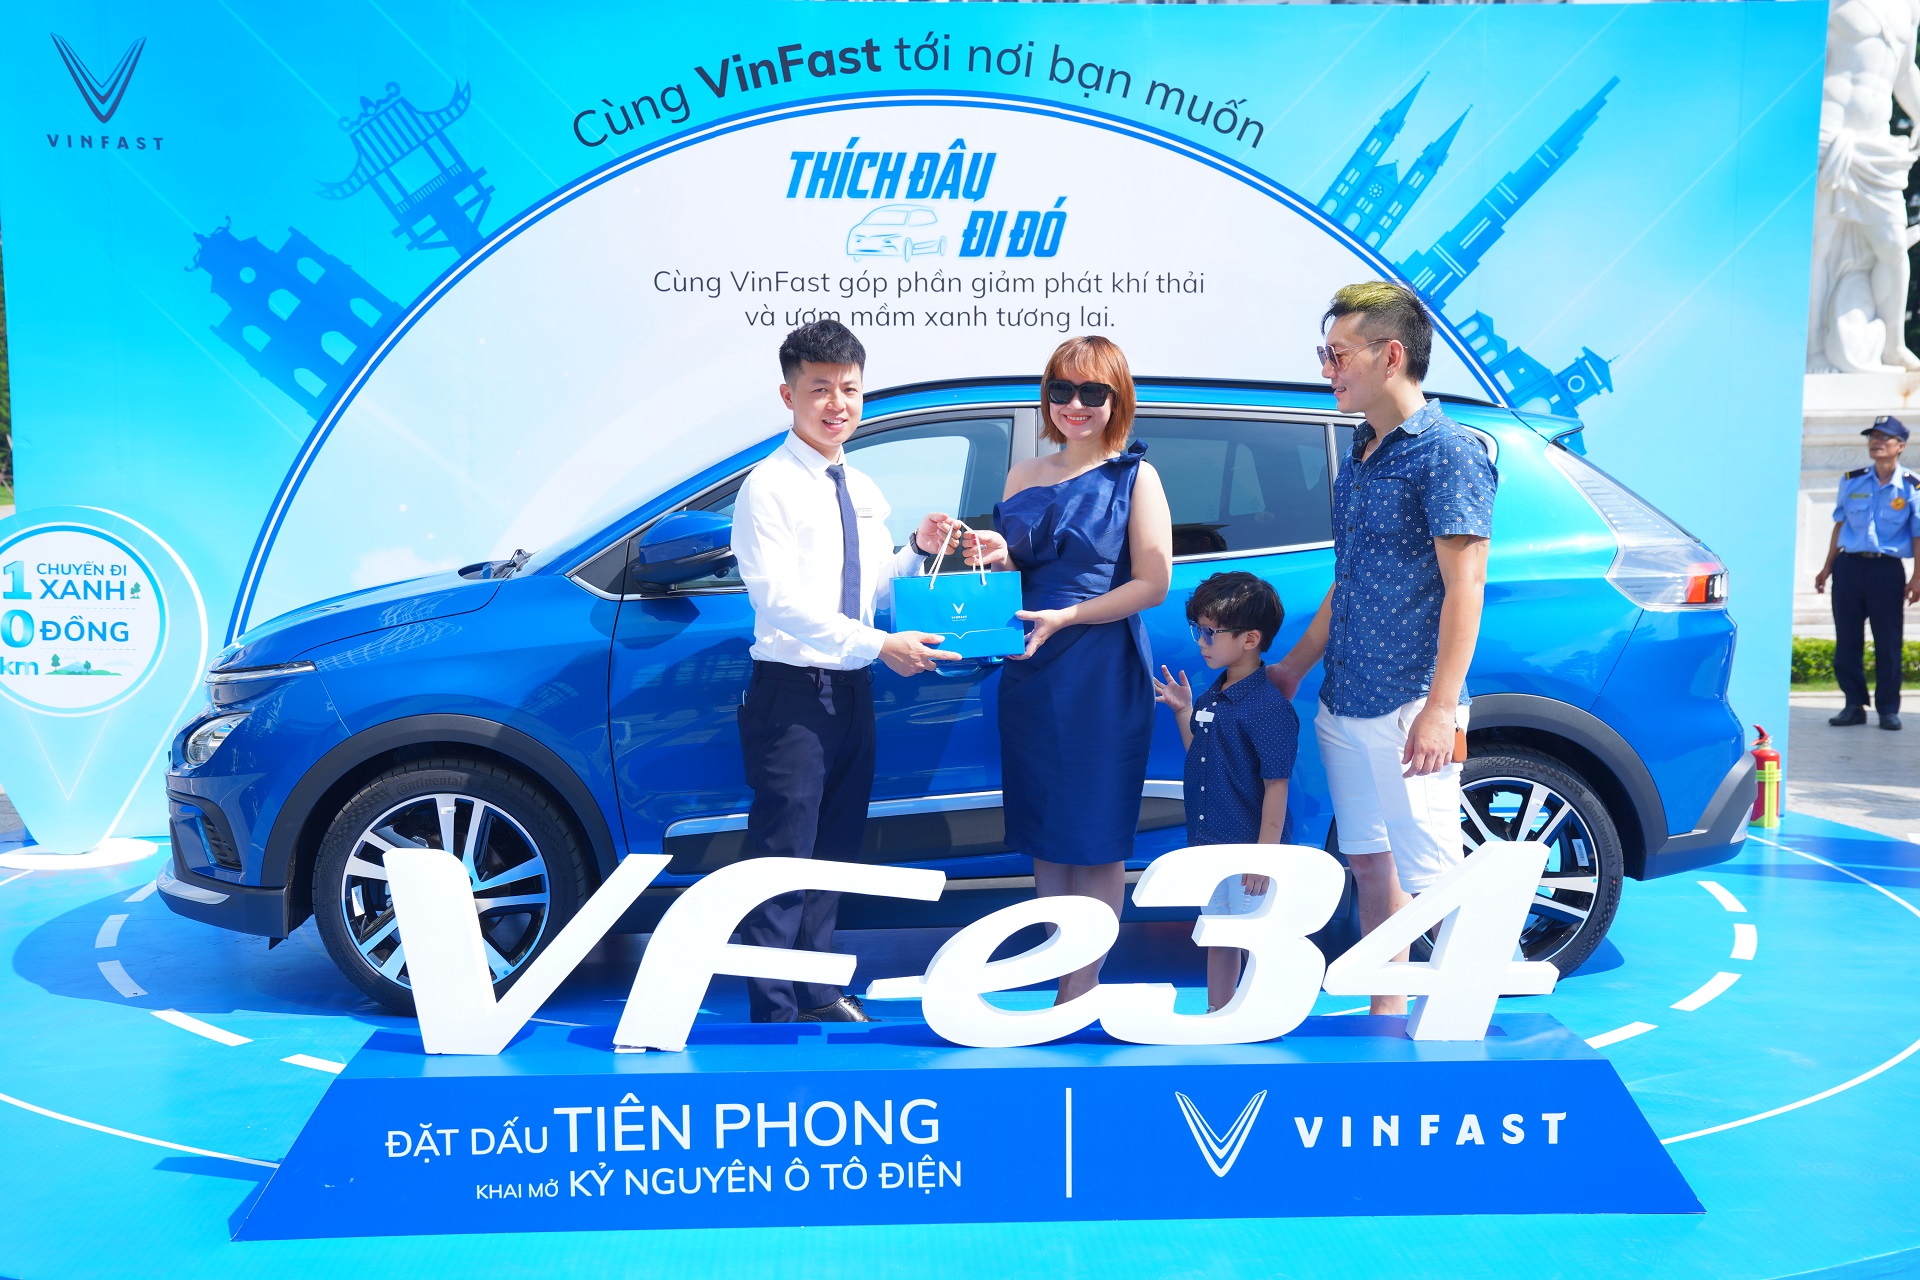 Đến Vincom chơi, được VinFast VF e34 đưa về nhà miễn phí - Ảnh 1.